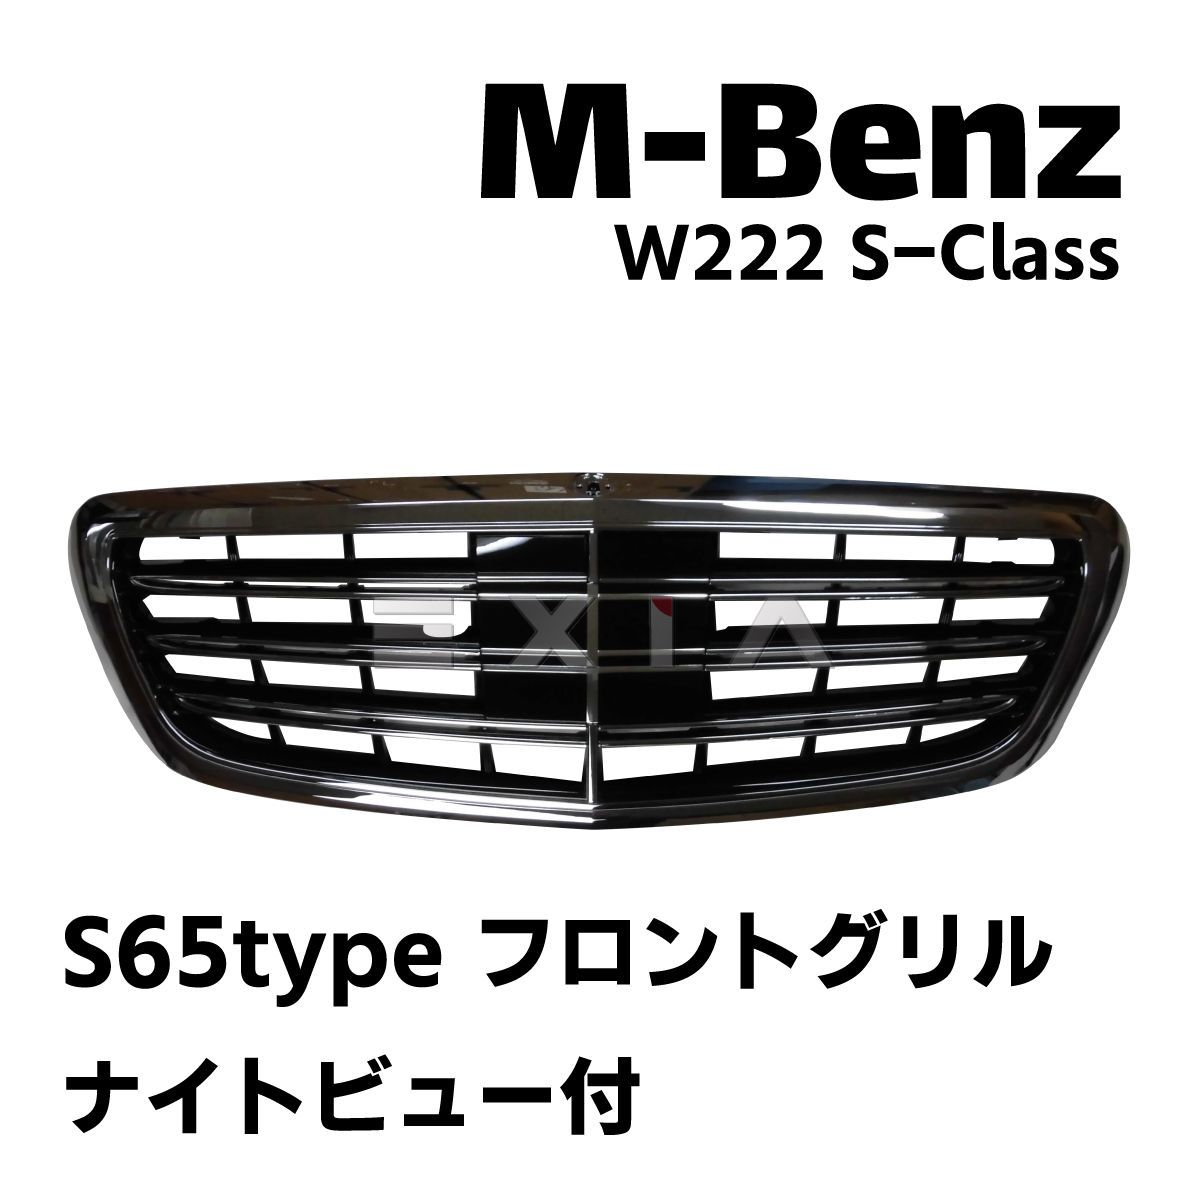 ナイトビュー有りタイプ メルセデス ベンツ W222 2013-年 S320 S400